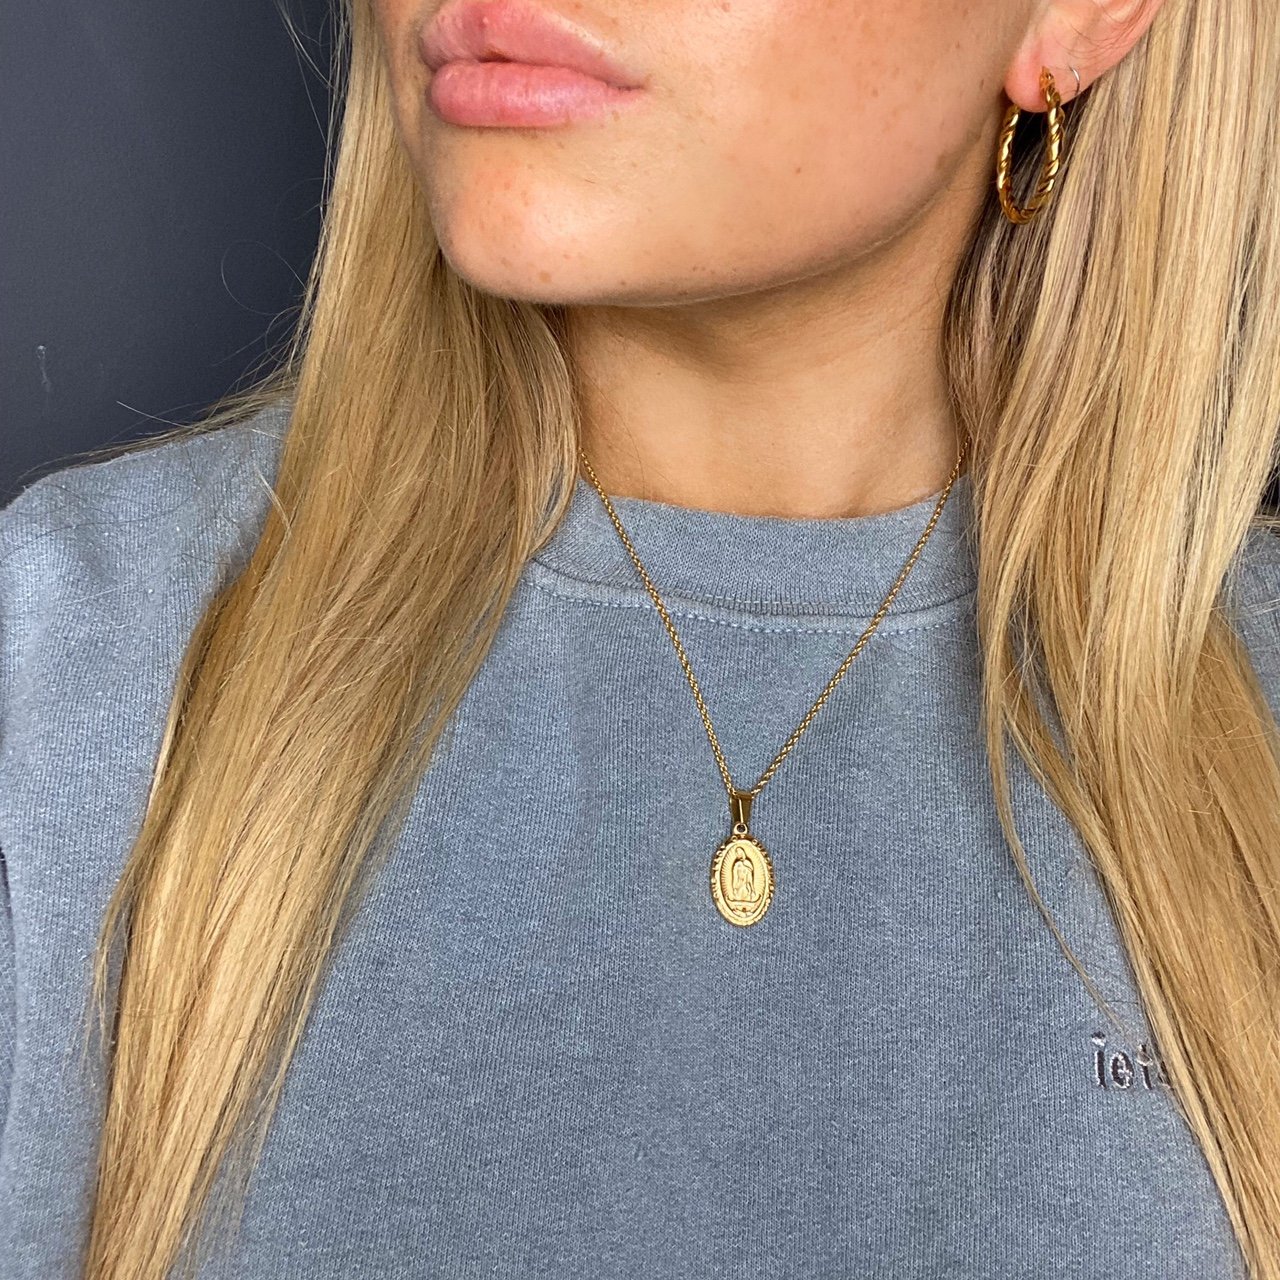 Women’s Gold Pendant Necklace - Vintique Clothing